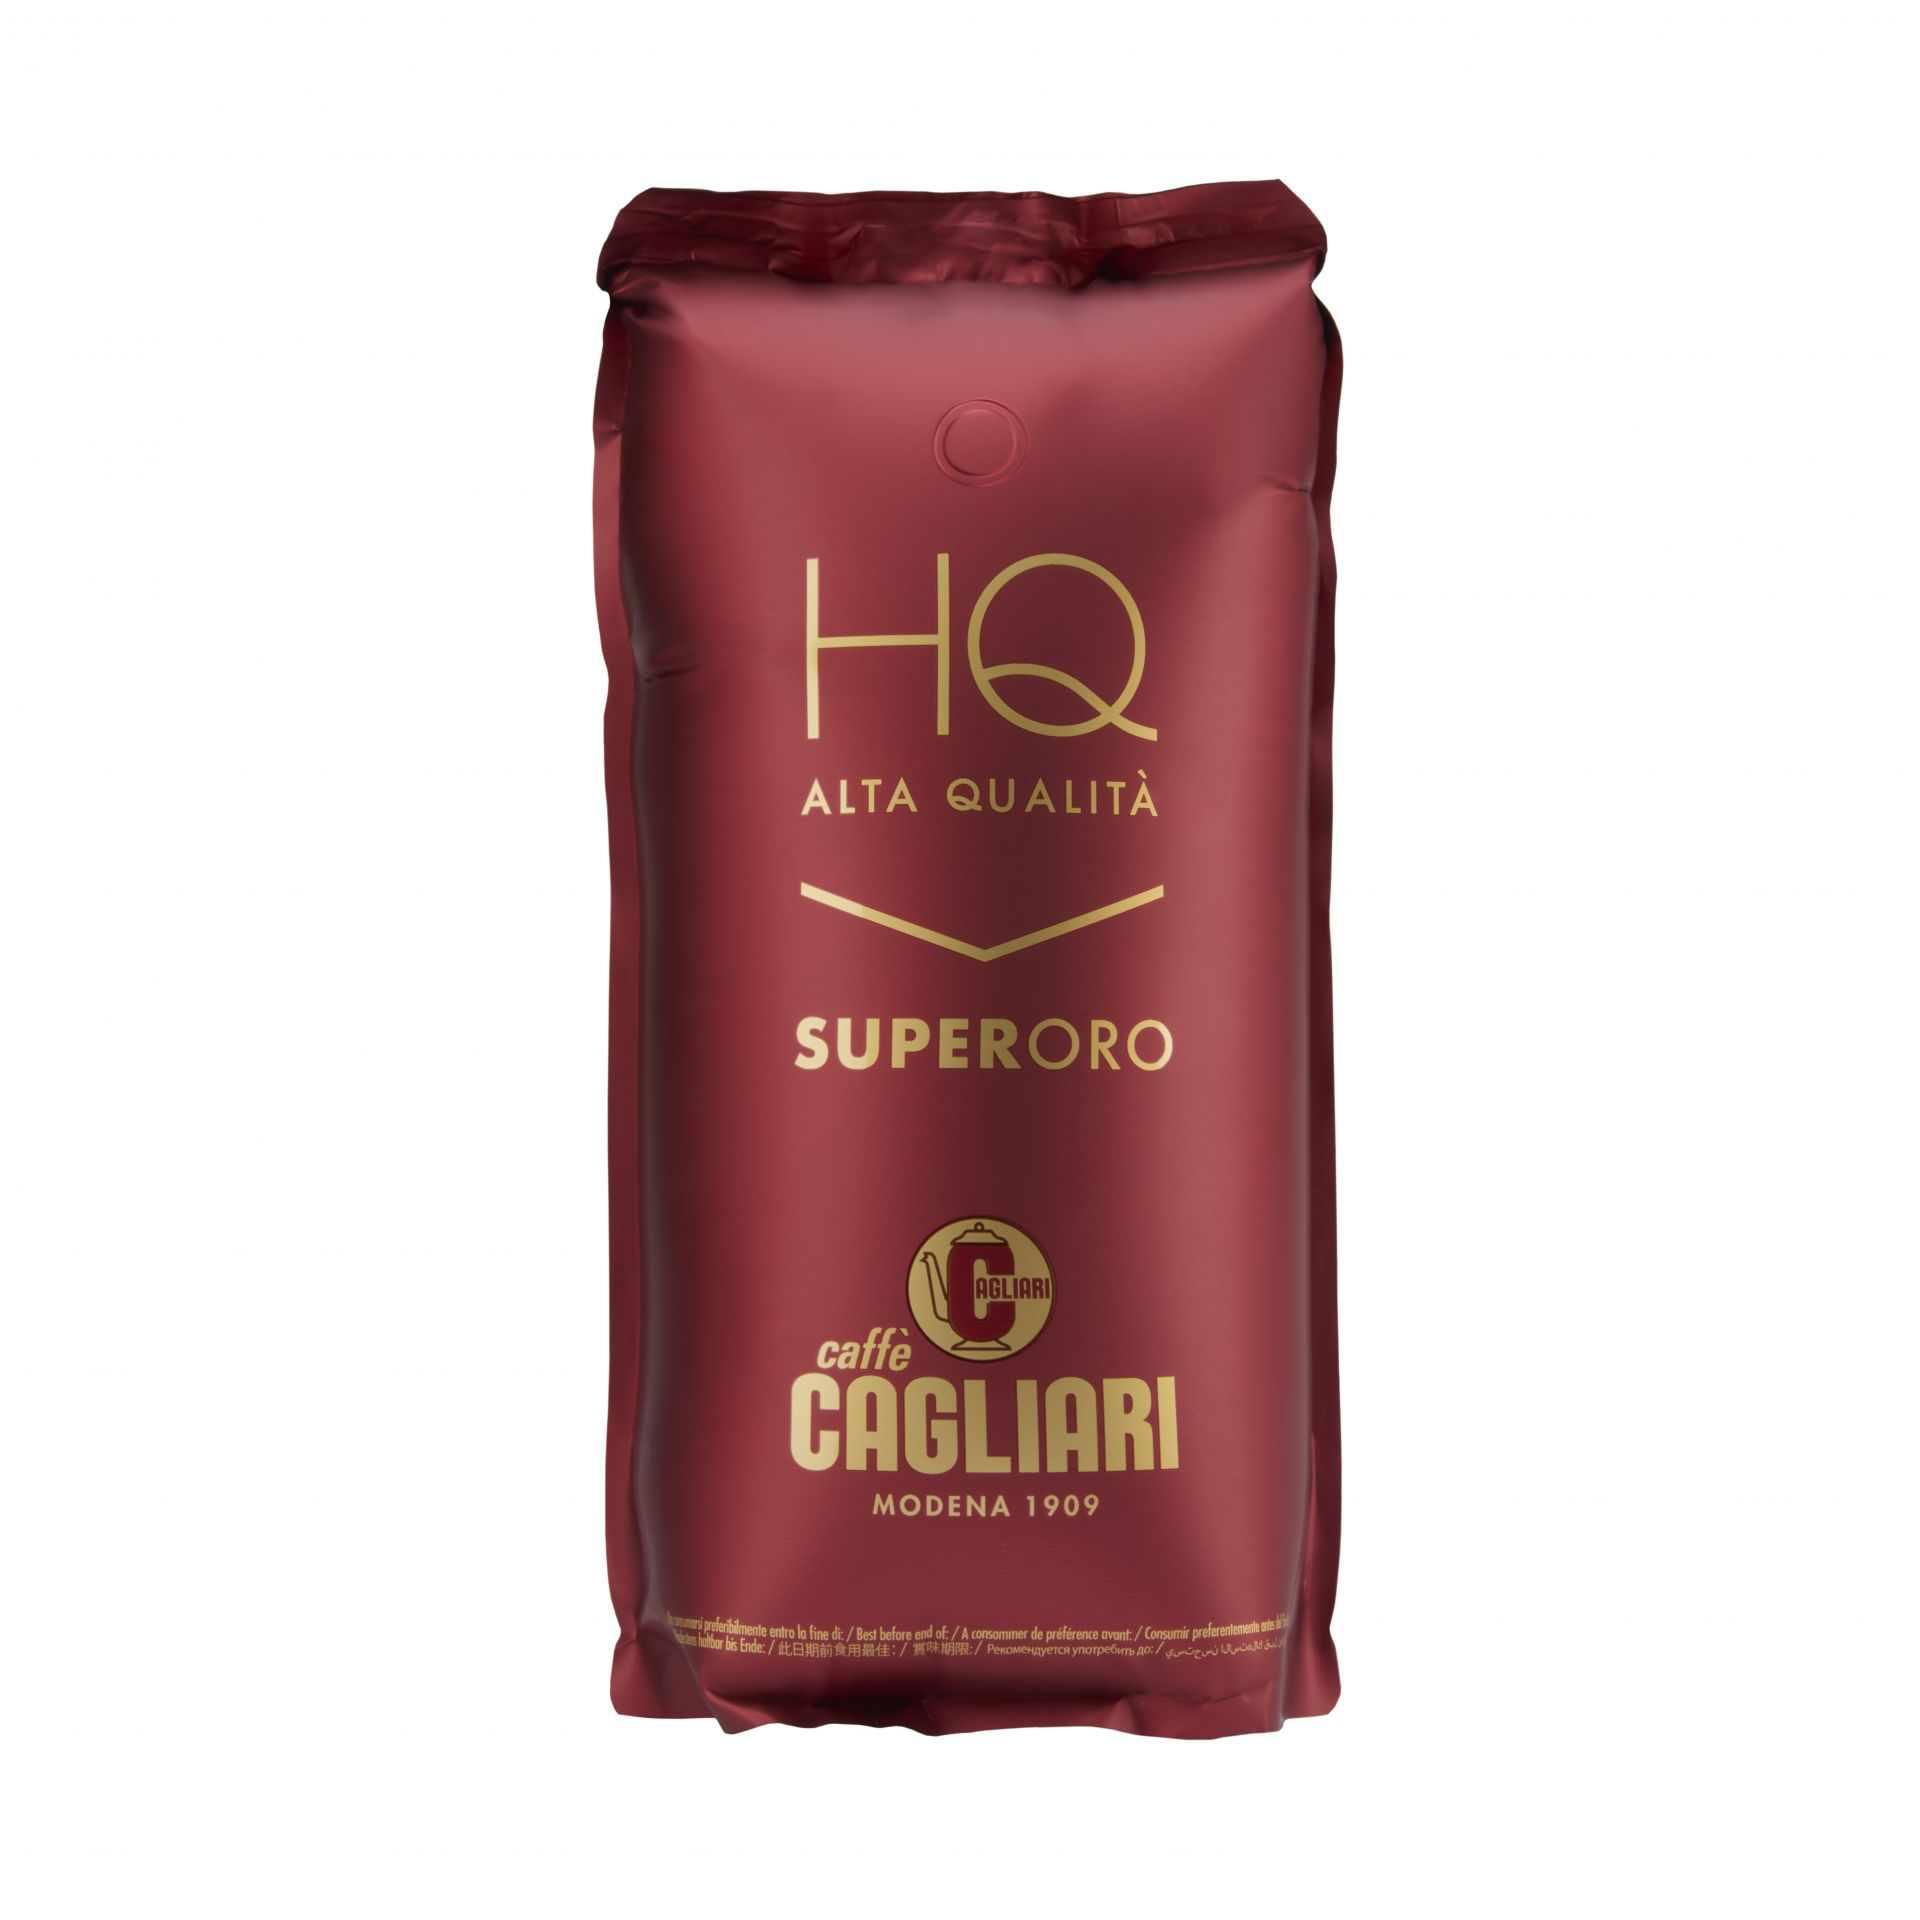 Caffè Cagliari - Super Oro High Quality - 1,25 kg